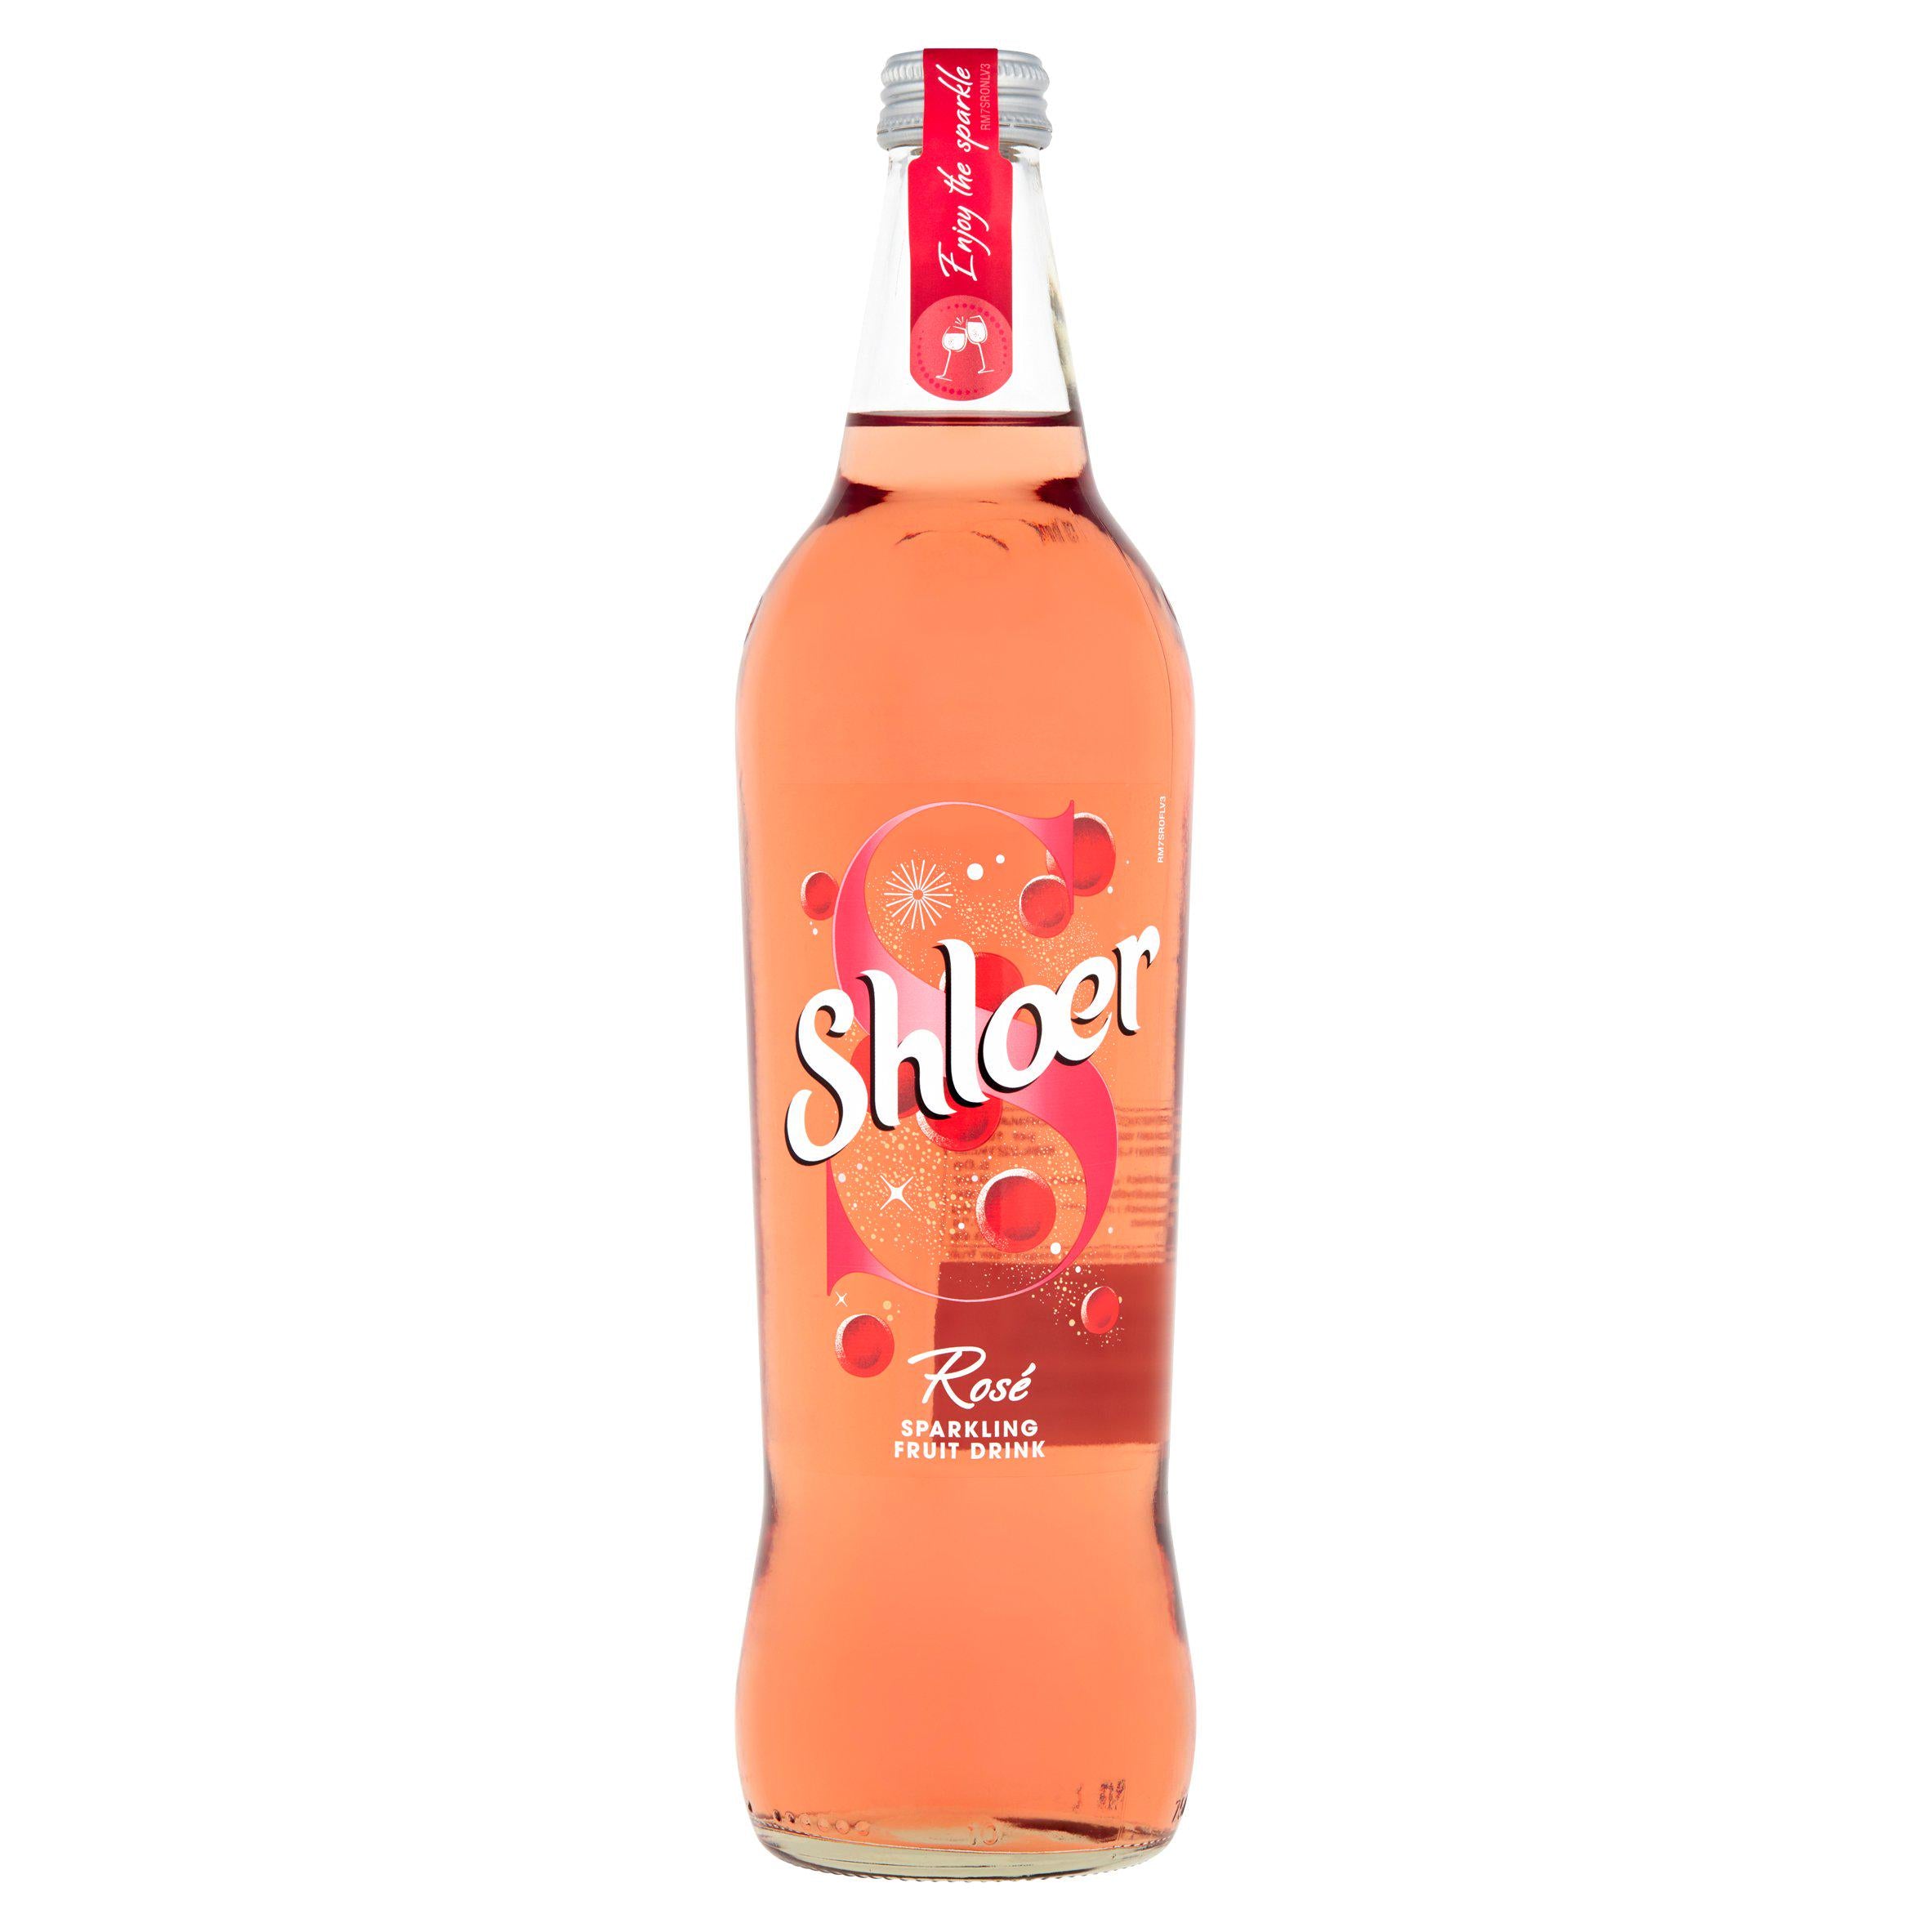 Shloer Rose Sparkling Grape Juice Drink 750ml Adult soft drinks Sainsburys   